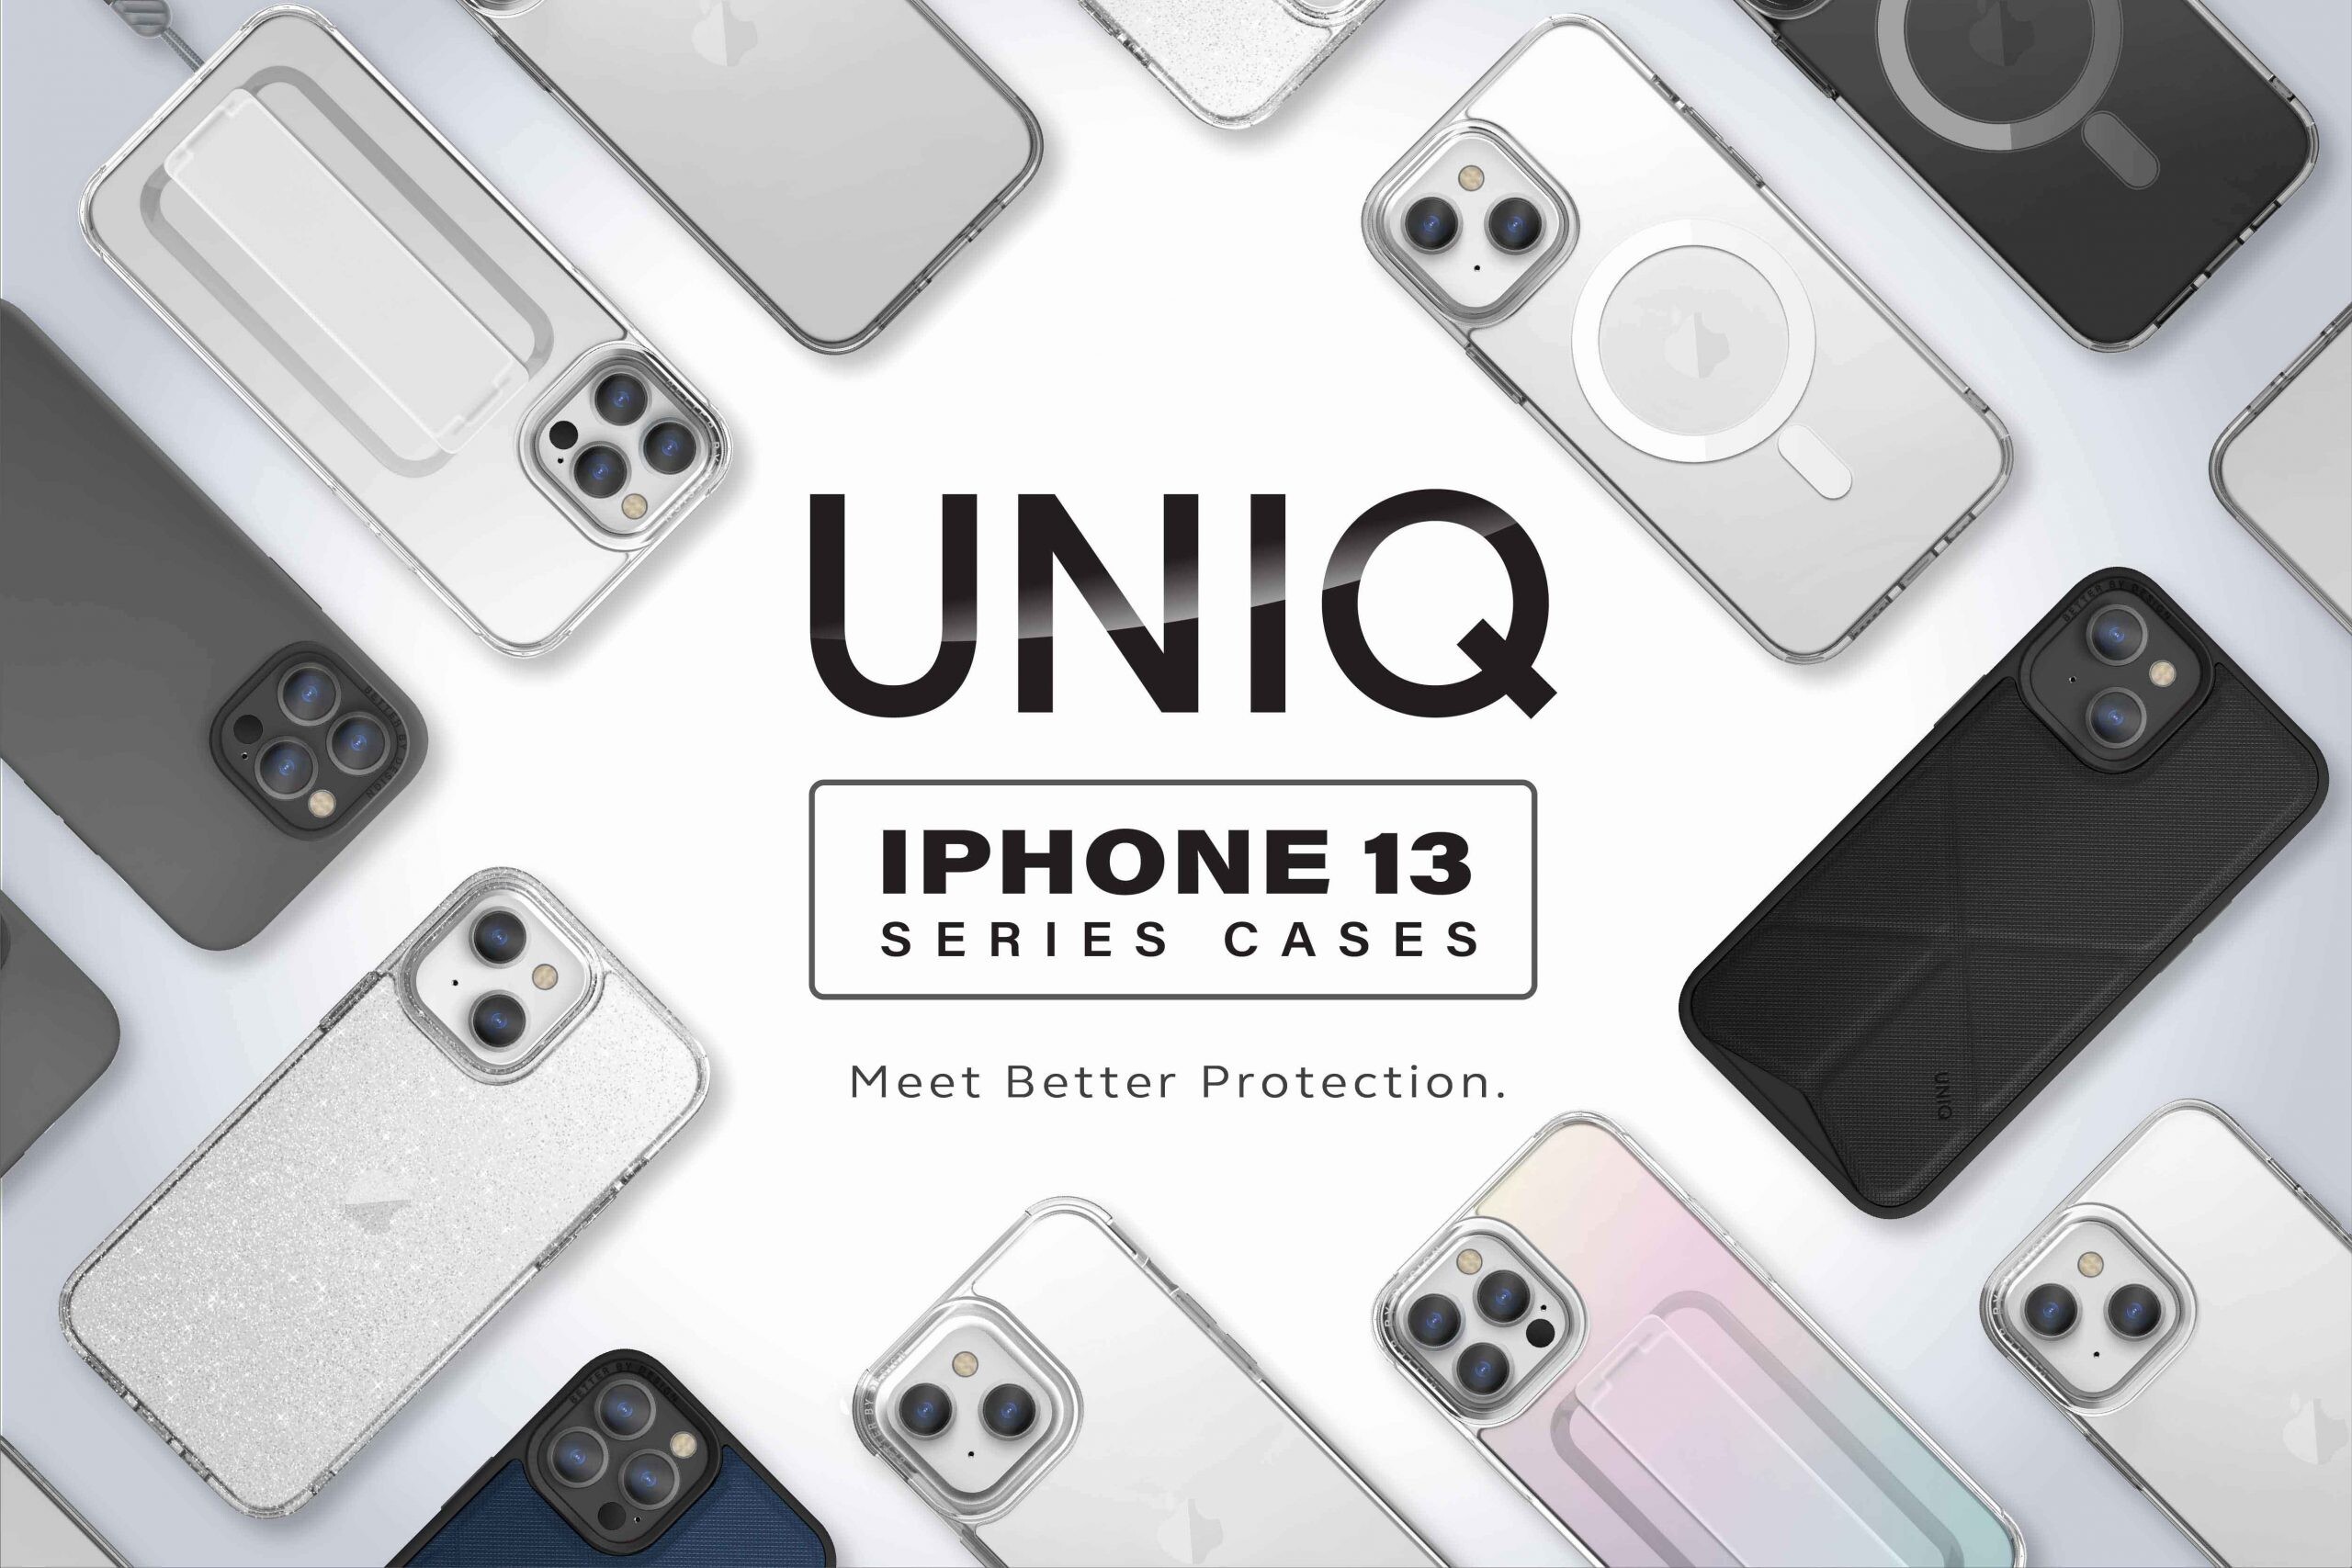 อาร์ทีบีฯ ส่งเคสกันกระแทก 8 รุ่นใหม่จากแบรนด์ Uniq ลงตลาด  ต้อนรับการมาของ iPhone 13 โดดเด่นด้วยดีไซน์และฟังก์ชั่นการใช้งานที่ดีเยี่ยม